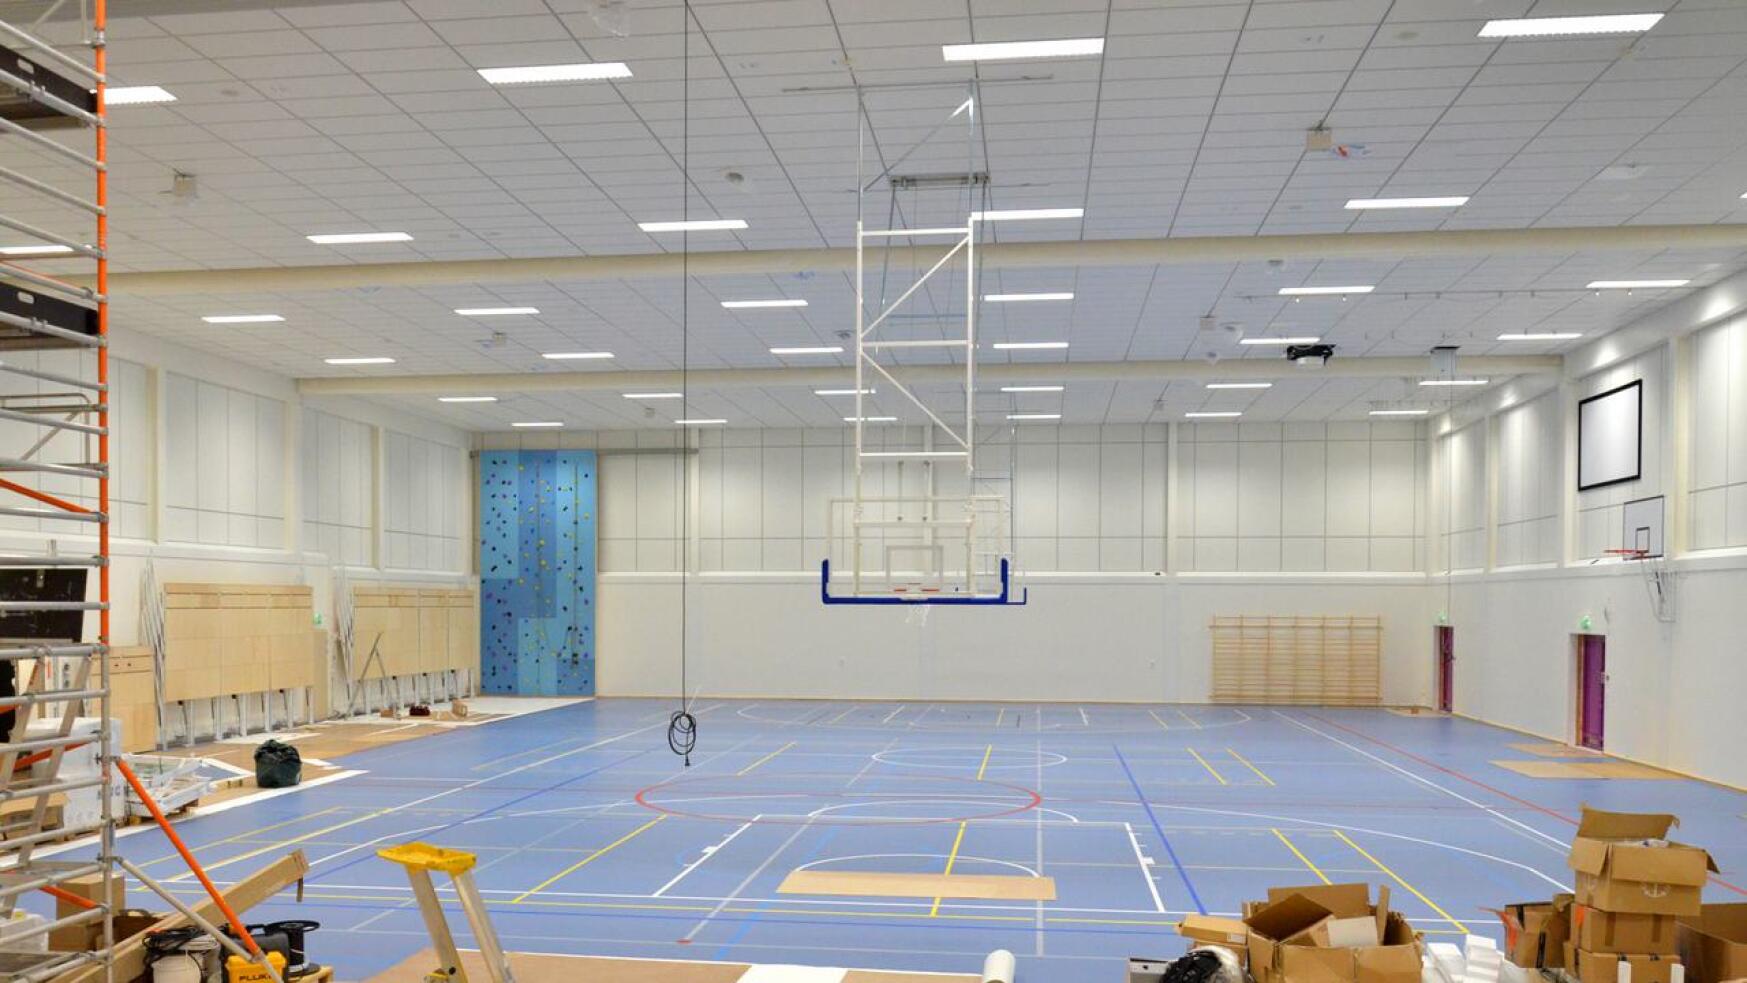 Taanilan koulun 1 300 neliön liikuntasali on Ylivieskan suurin ja sinne mahtuu täysimittainen futsal- ja salibandykenttä. Saliin saadaan ensi kaudella myös molempien lajien sarjapelejä.